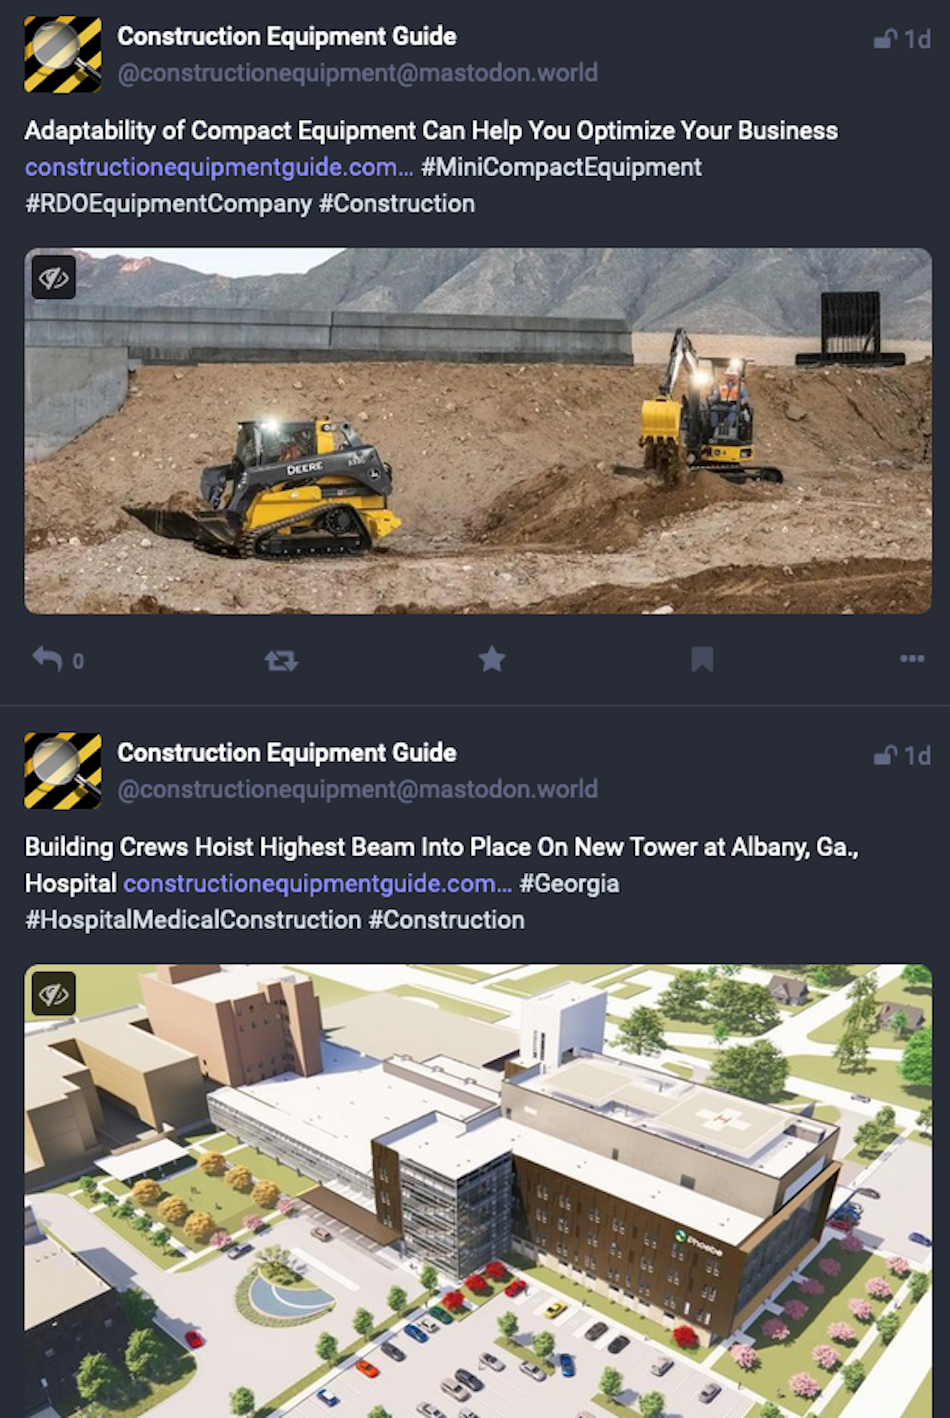 Zwei Beiträge auf der Social-Media-Plattform Mastodon zeigen, dass der Branchennachrichtendienst Construction Equipment Guide Nachrichten von seiner Website bewirbt.